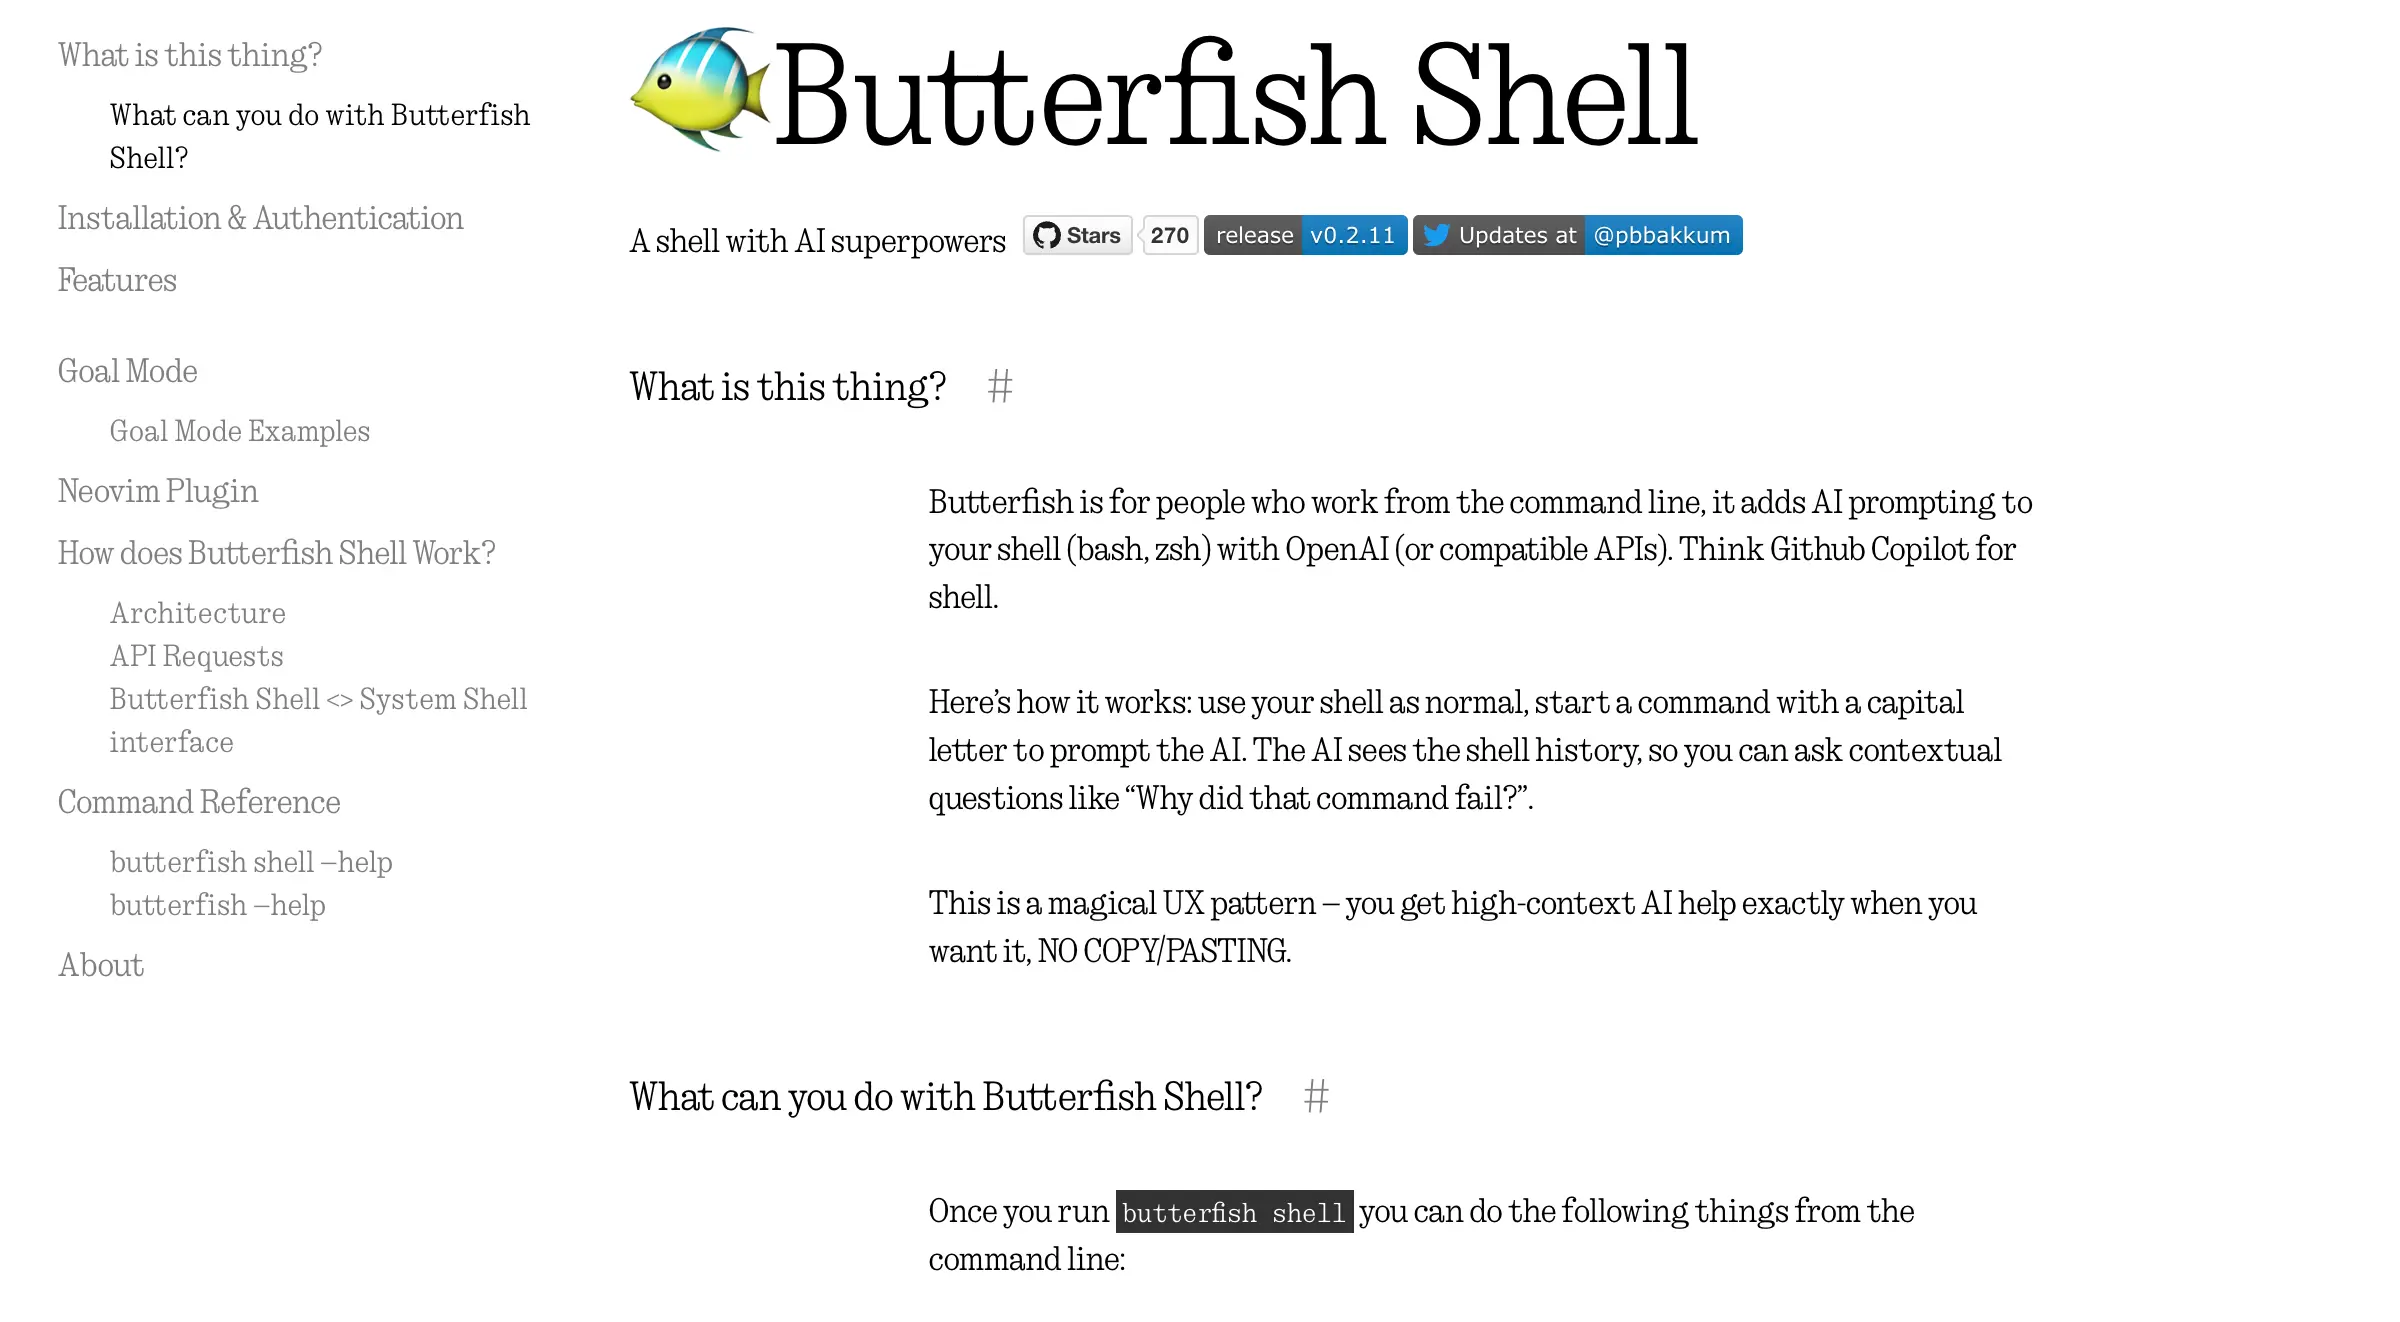 Butterfish Shell